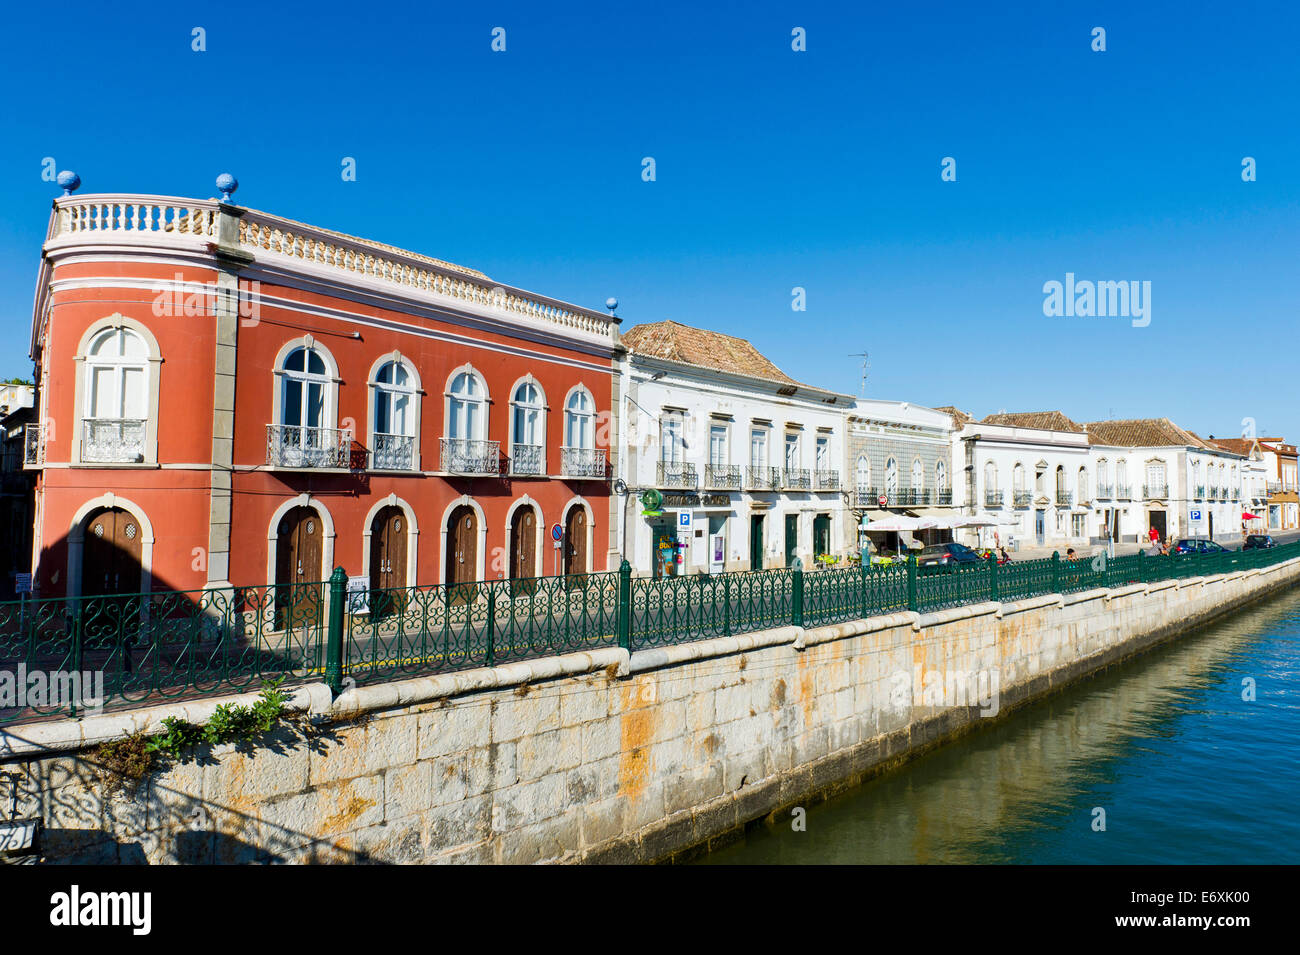 Historic buildings at Tavira Algarve Portugal. Stock Photo